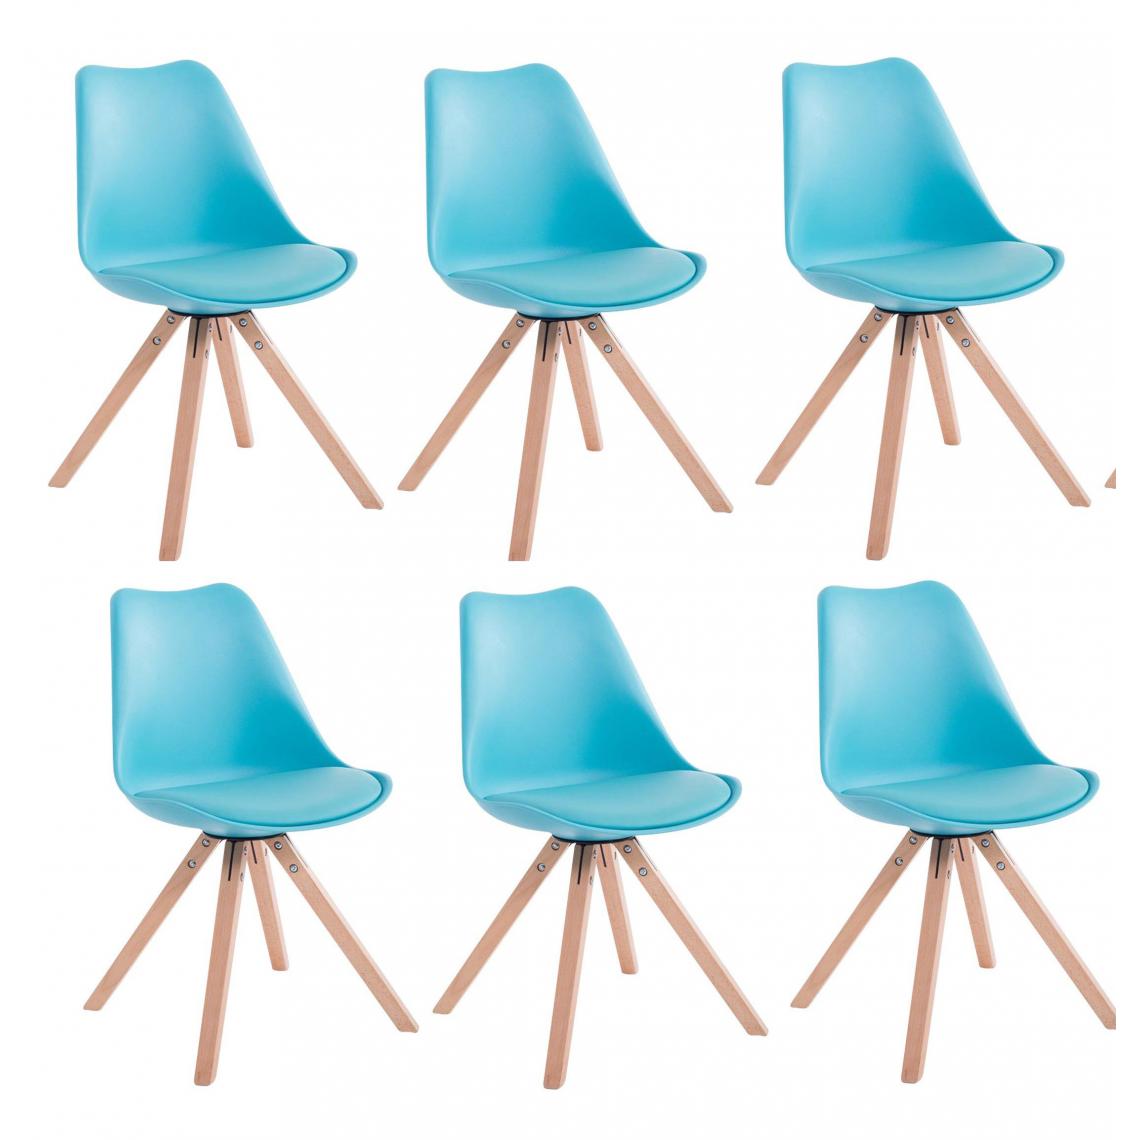 Decoshop26 - Lot de 6 chaises de salle à manger scandinave simili-cuir bleu pieds bois CDS10221 - Chaises